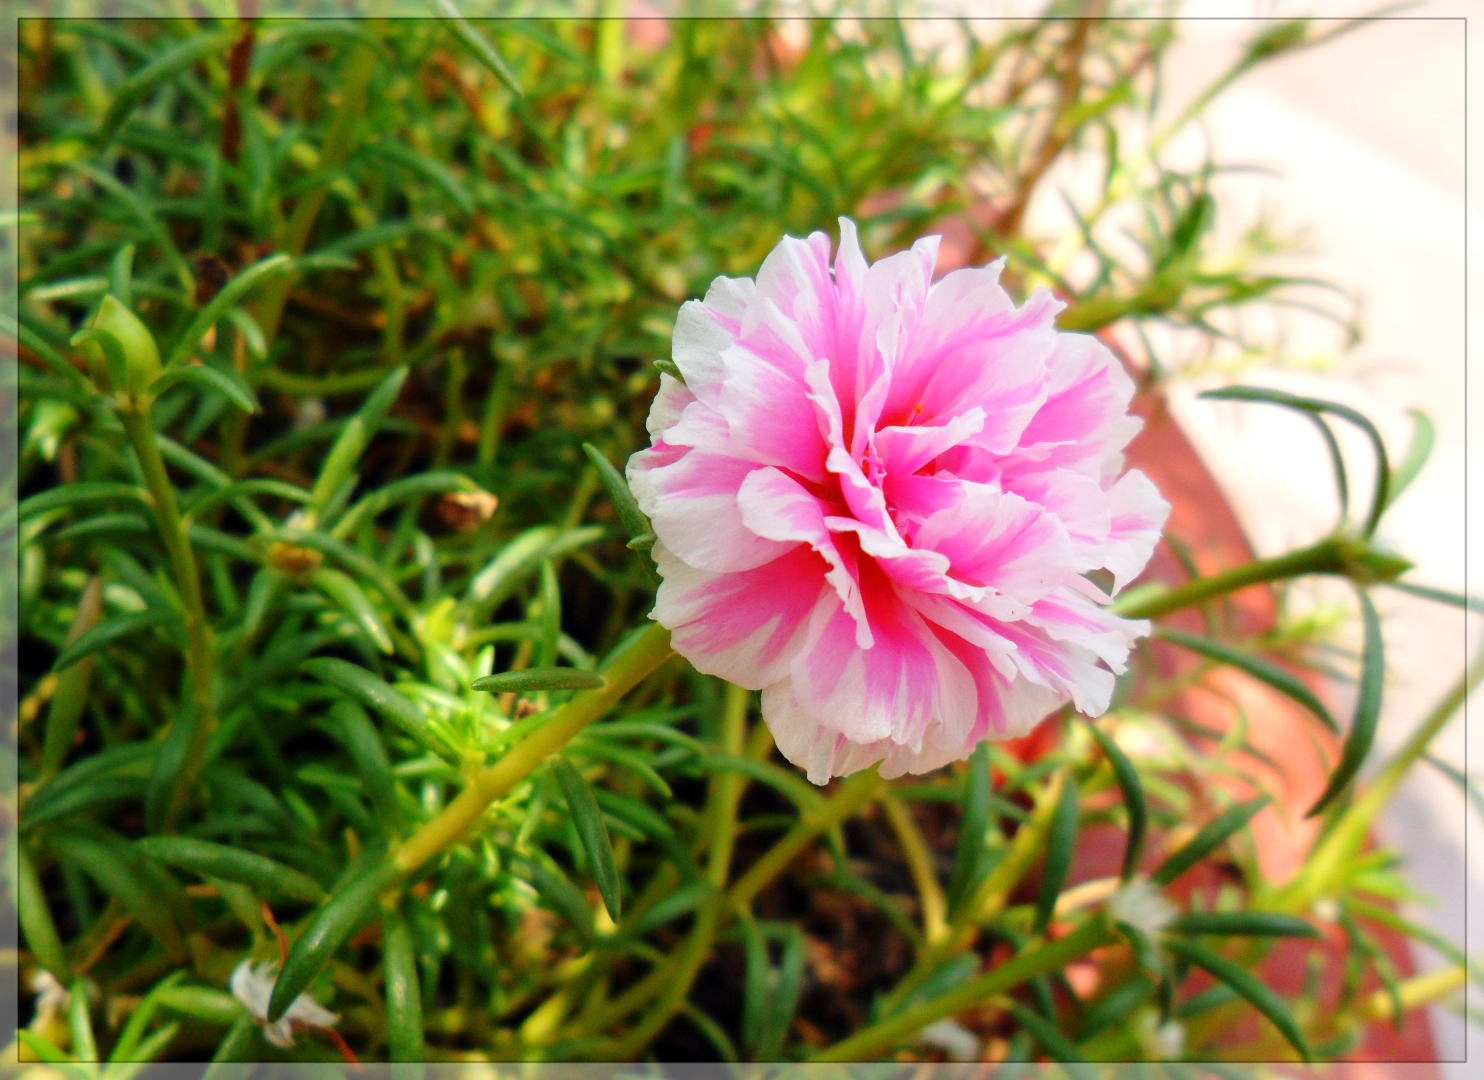 Hoa mười giờ cực đẹp màu hồng và trắng